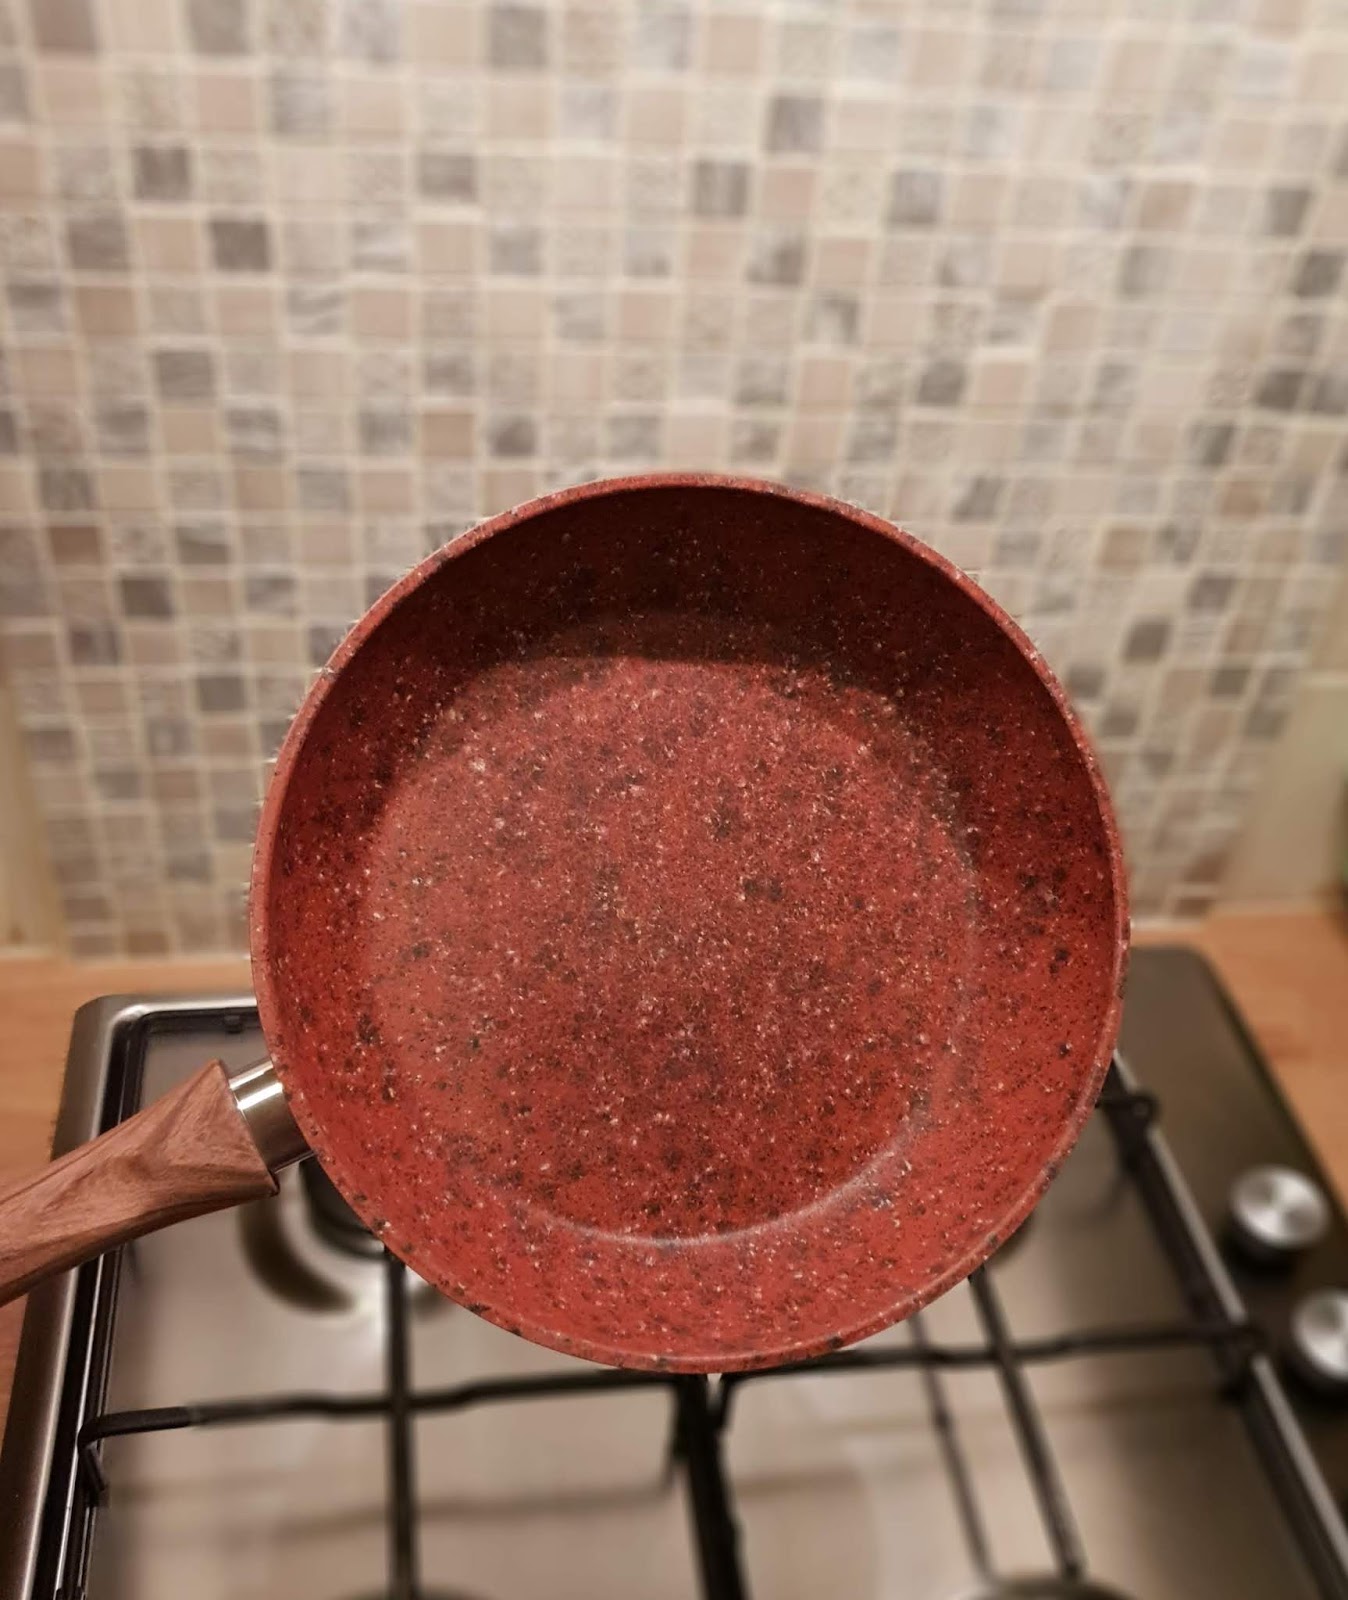 JML Stoneware Frying Pan 28cm